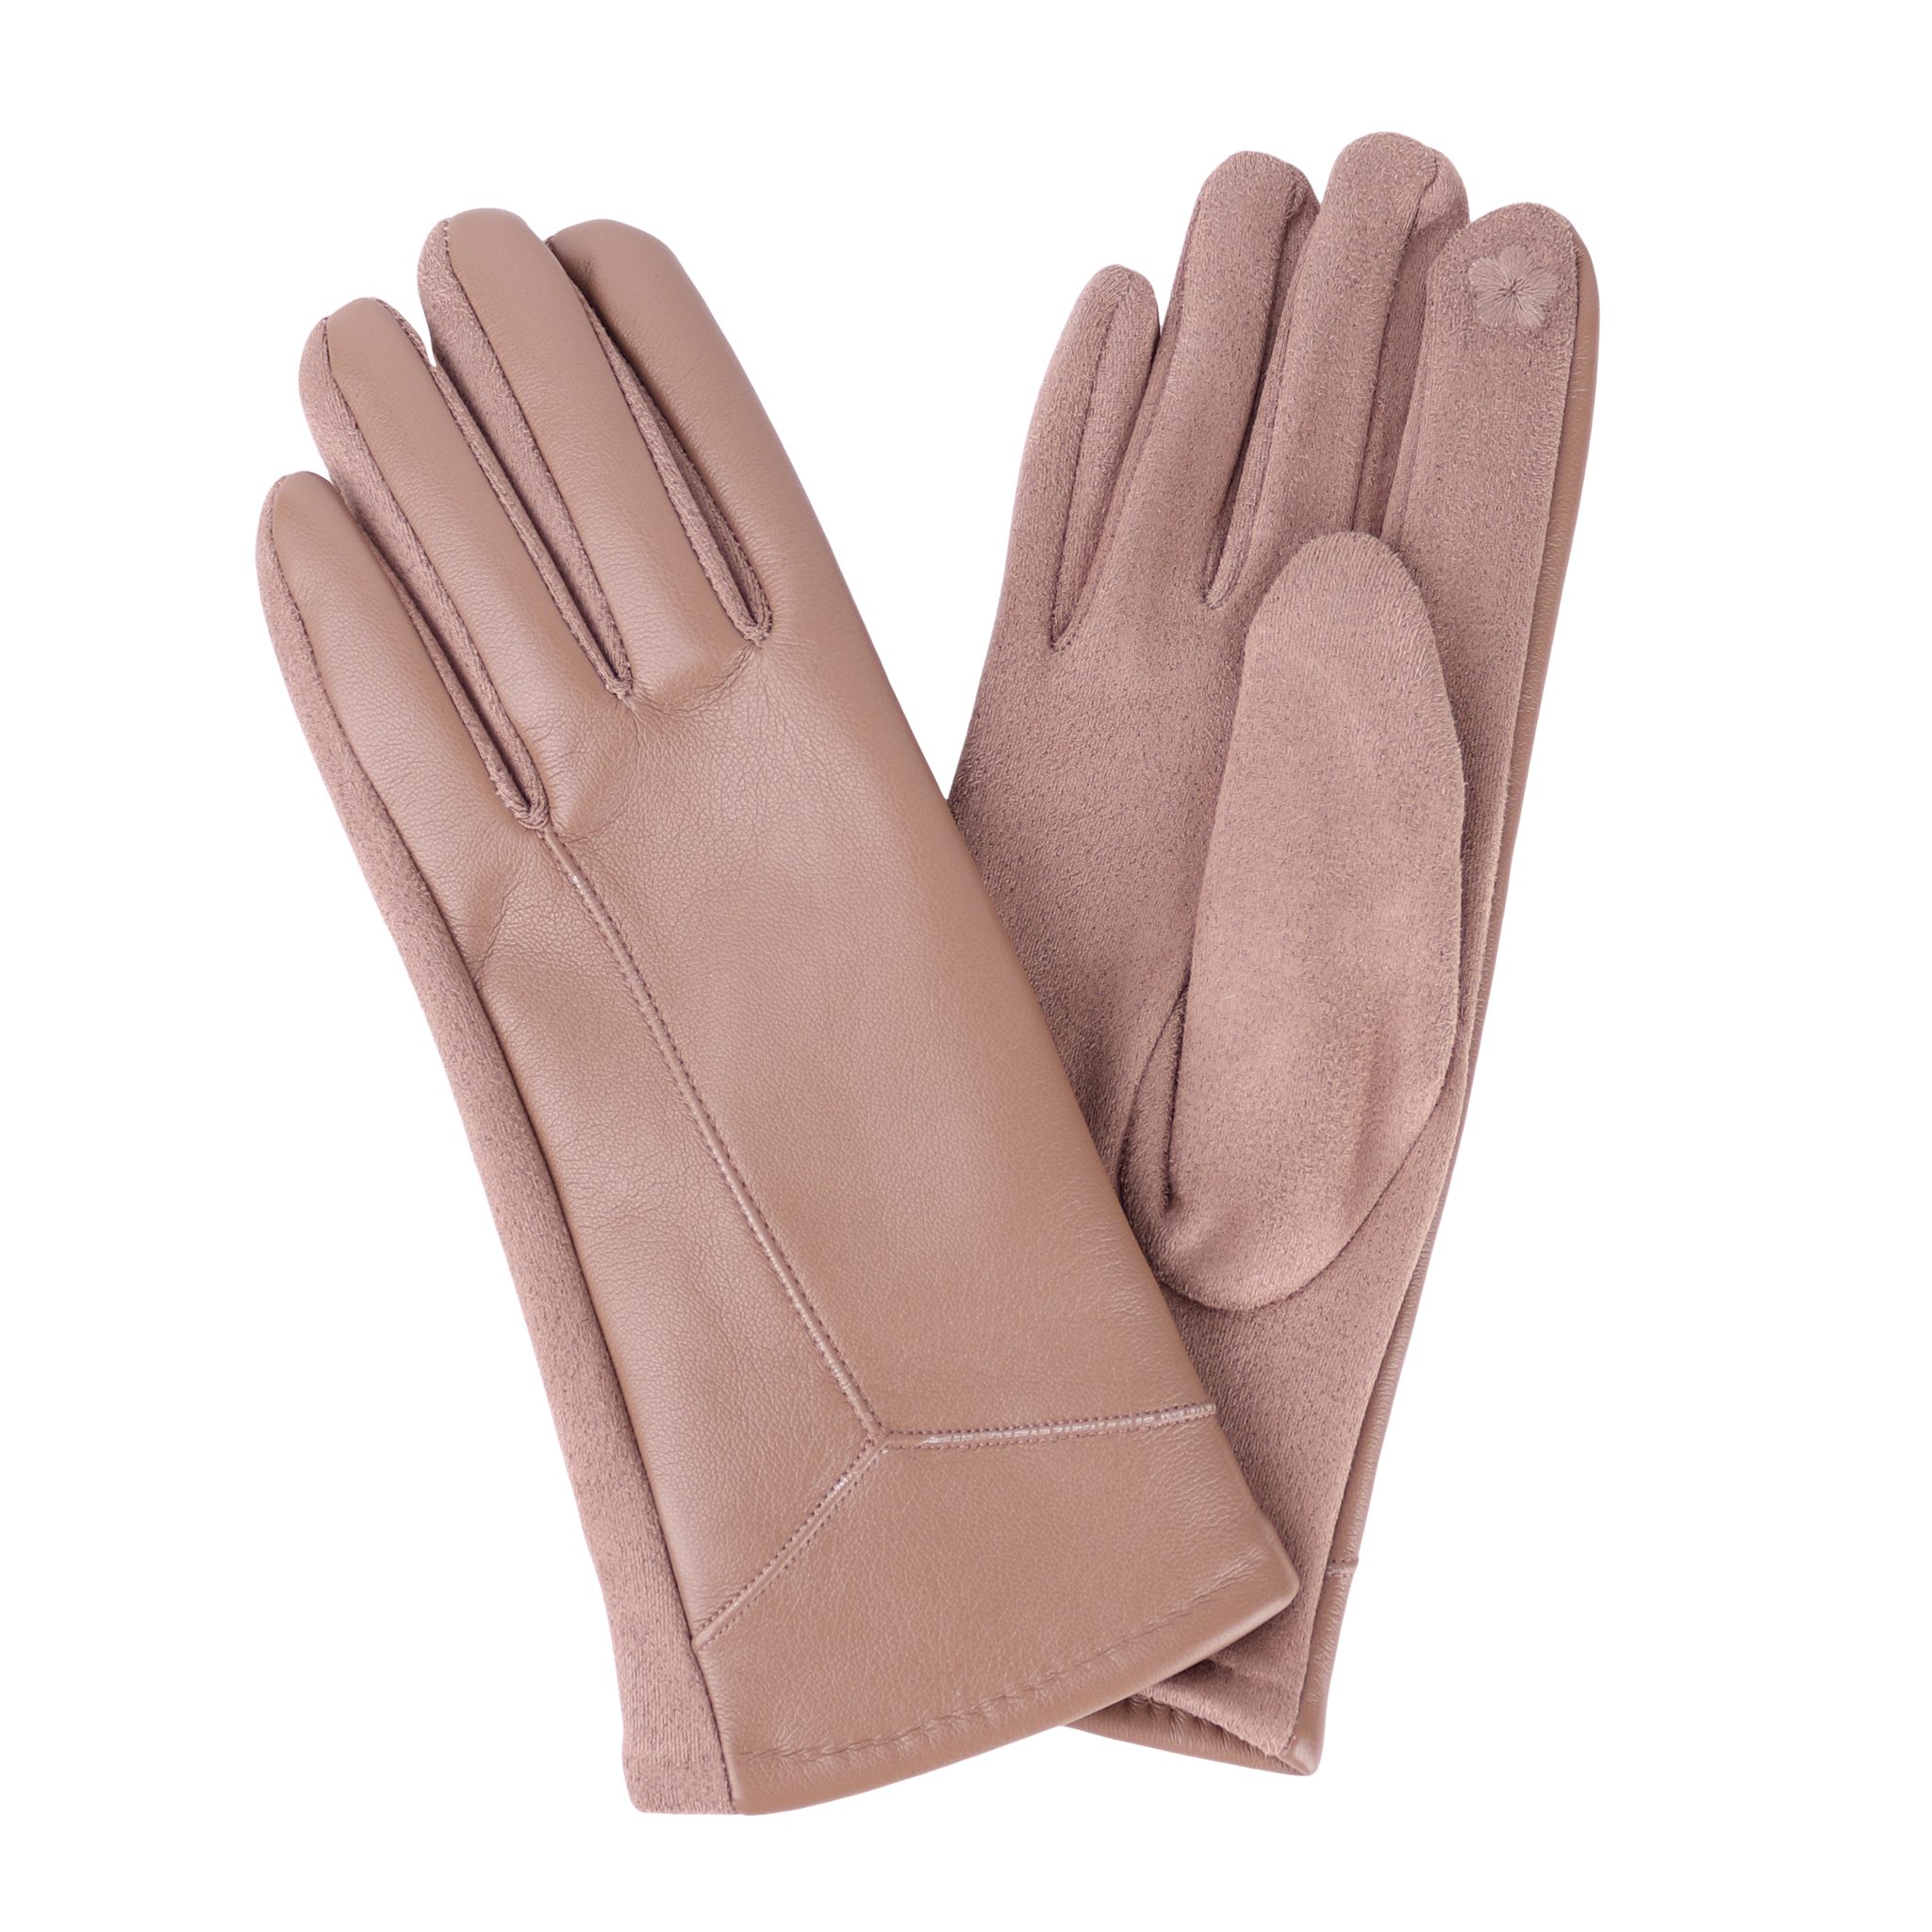 ideal Veganleder weich Lederhandschuhe Winter Damen für Touchscreen ONESIZE Handschuhe Taupe warm und Warm gefüttert MIRROSI sehr aus Herbst oder